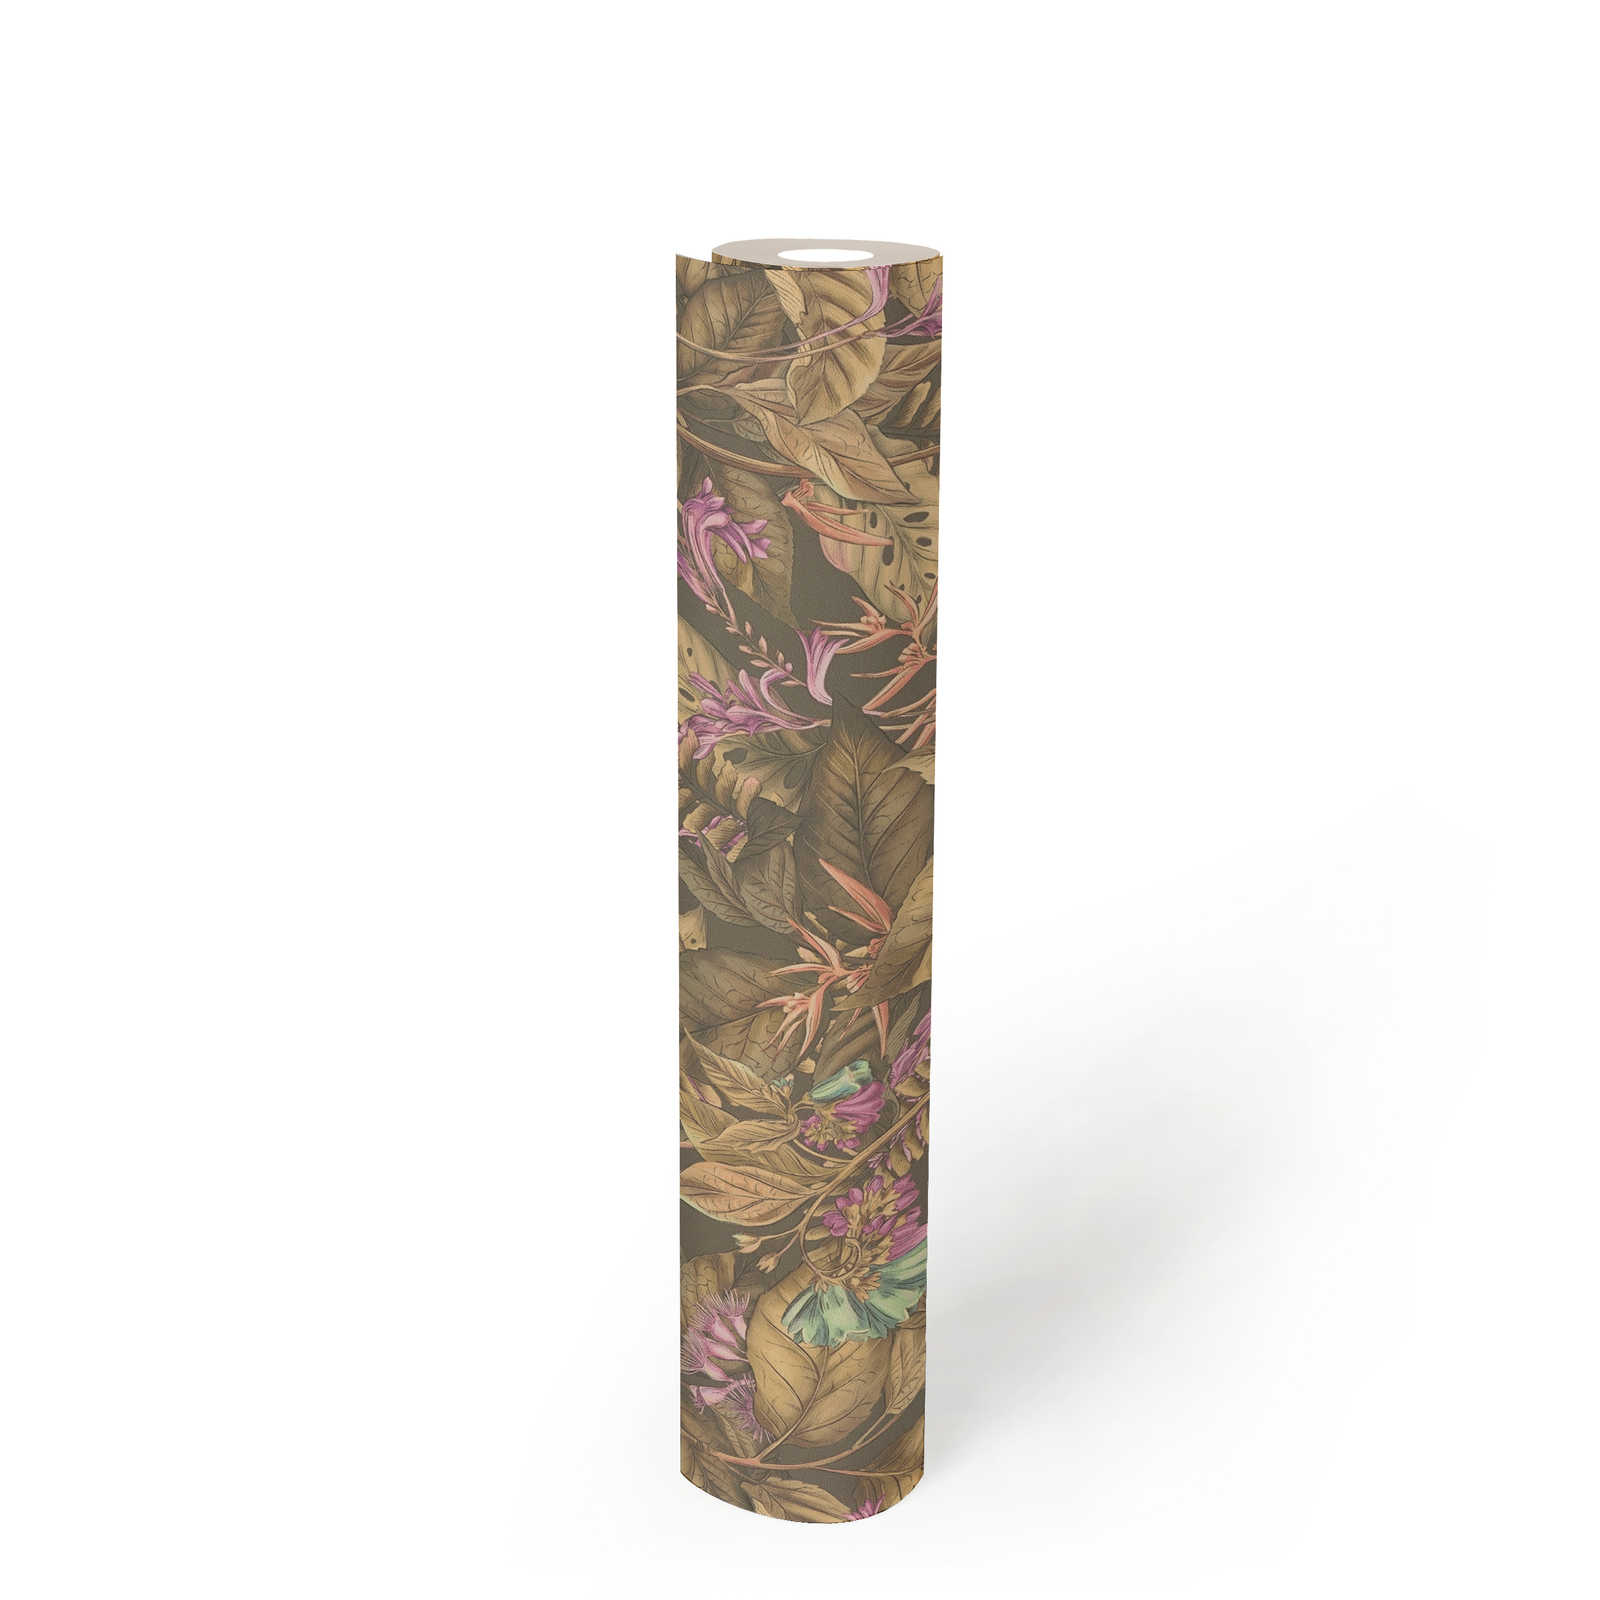             Florale Tapete mit Blüten & Blättern strukturiert matt – Braun, Beige, Lila
        